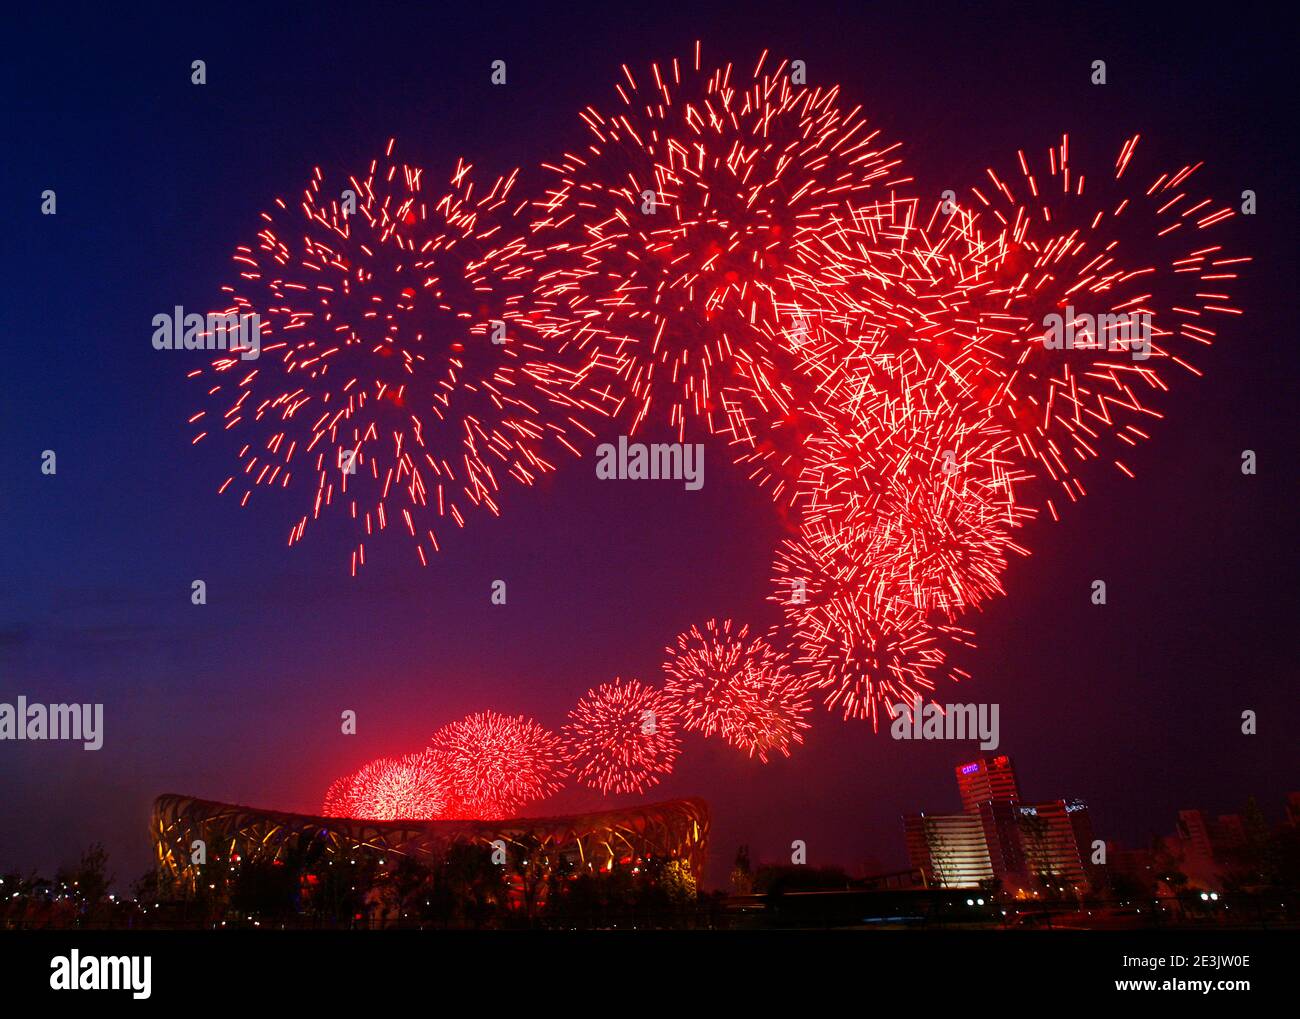 Fuochi d'artificio che fioriscono sul cielo notturno foto di alta qualità Foto Stock